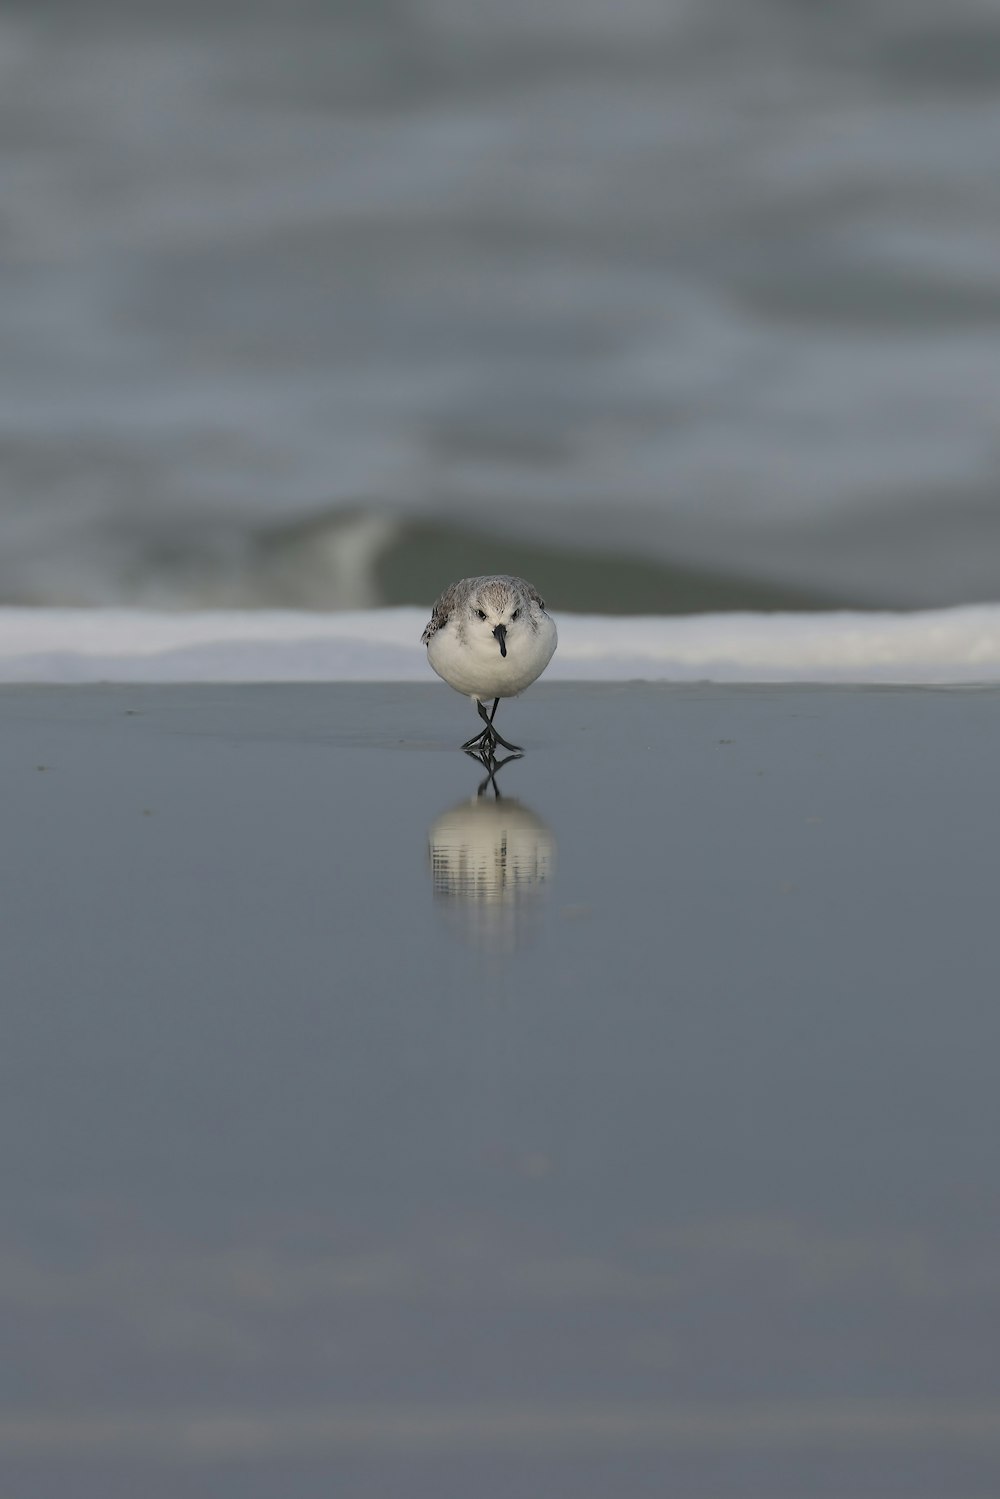 a small bird standing on a wet beach